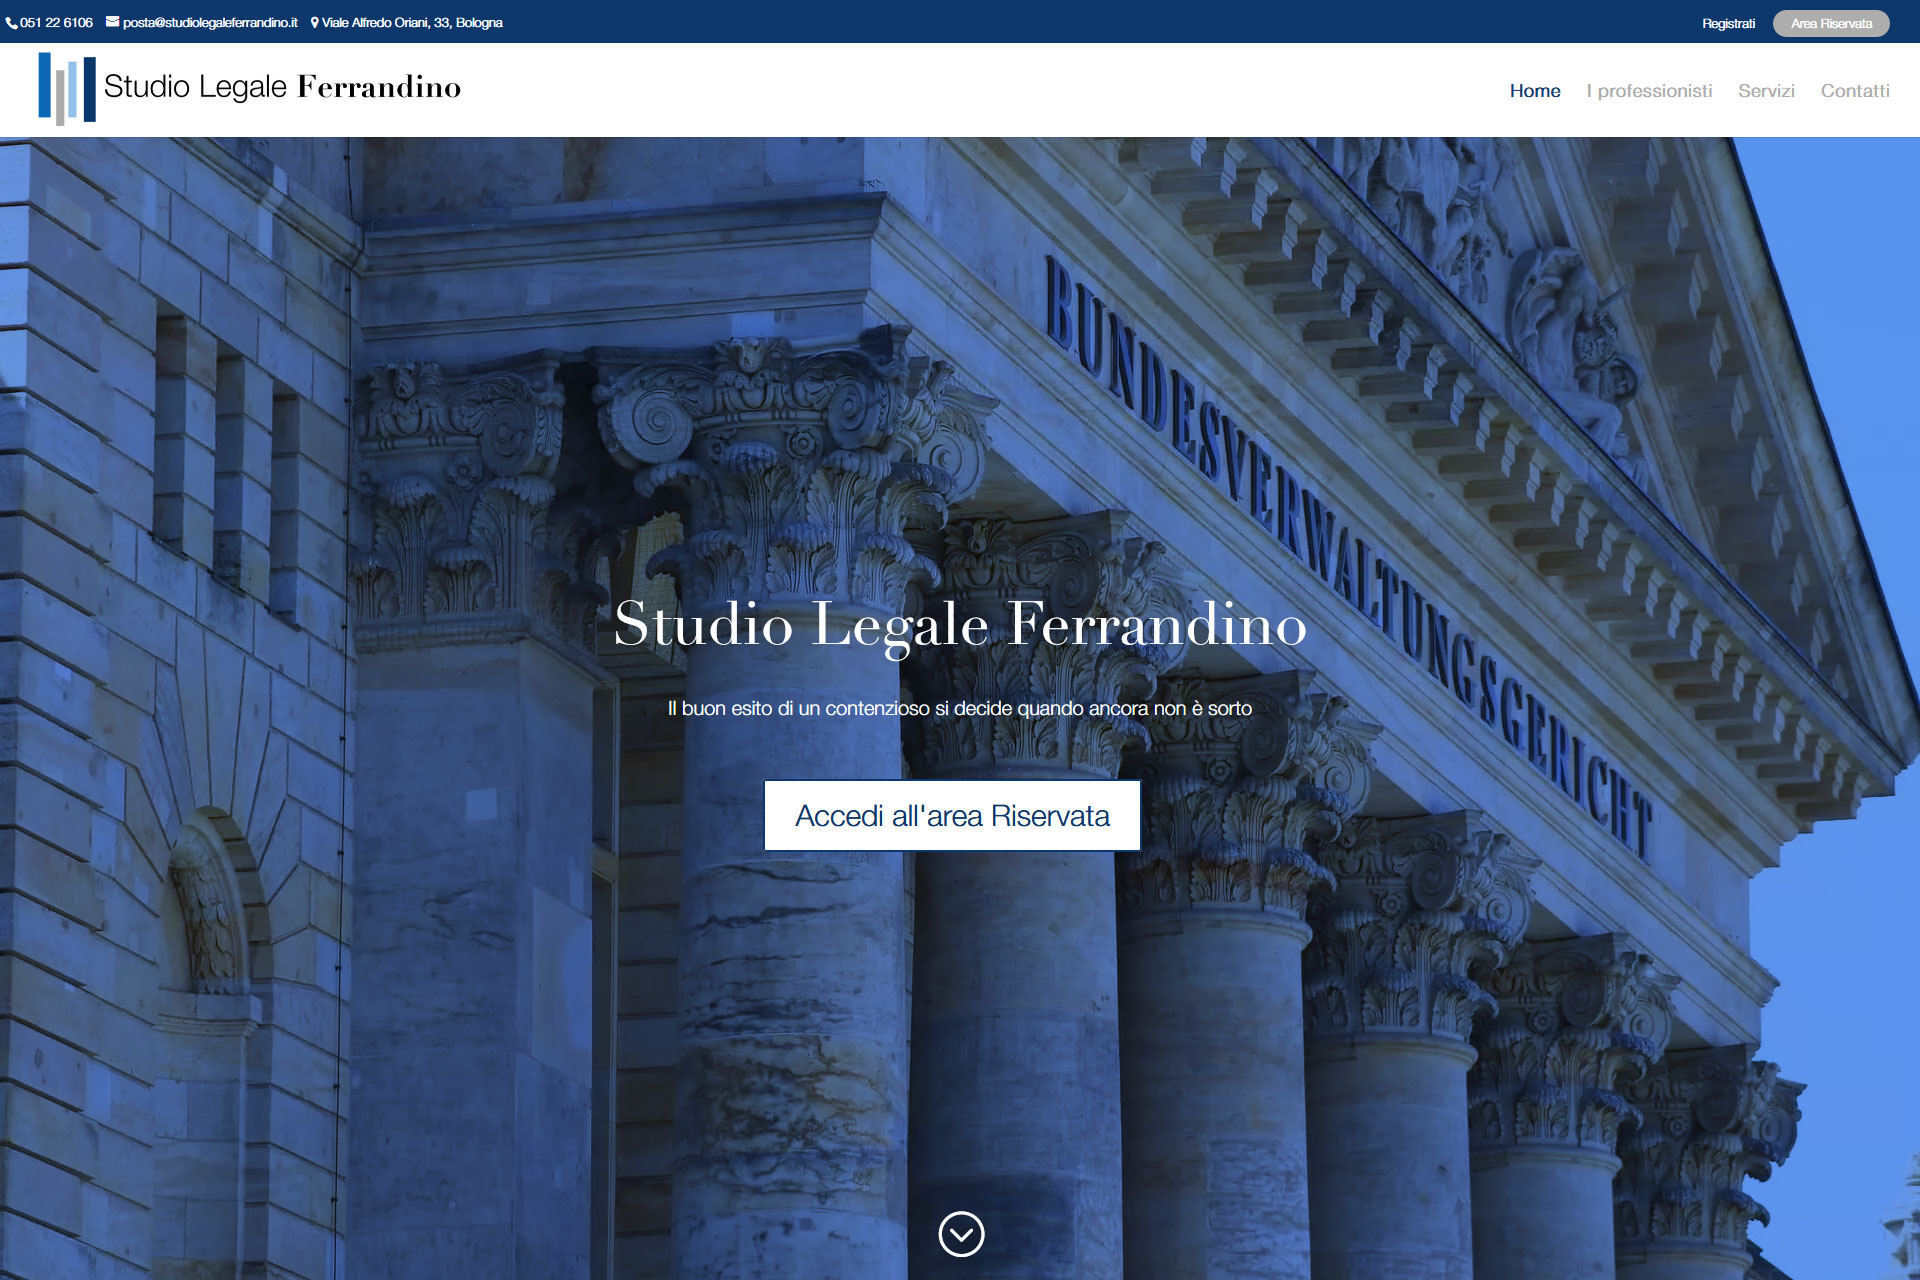 Studio Legale Ferrandino Sito Web